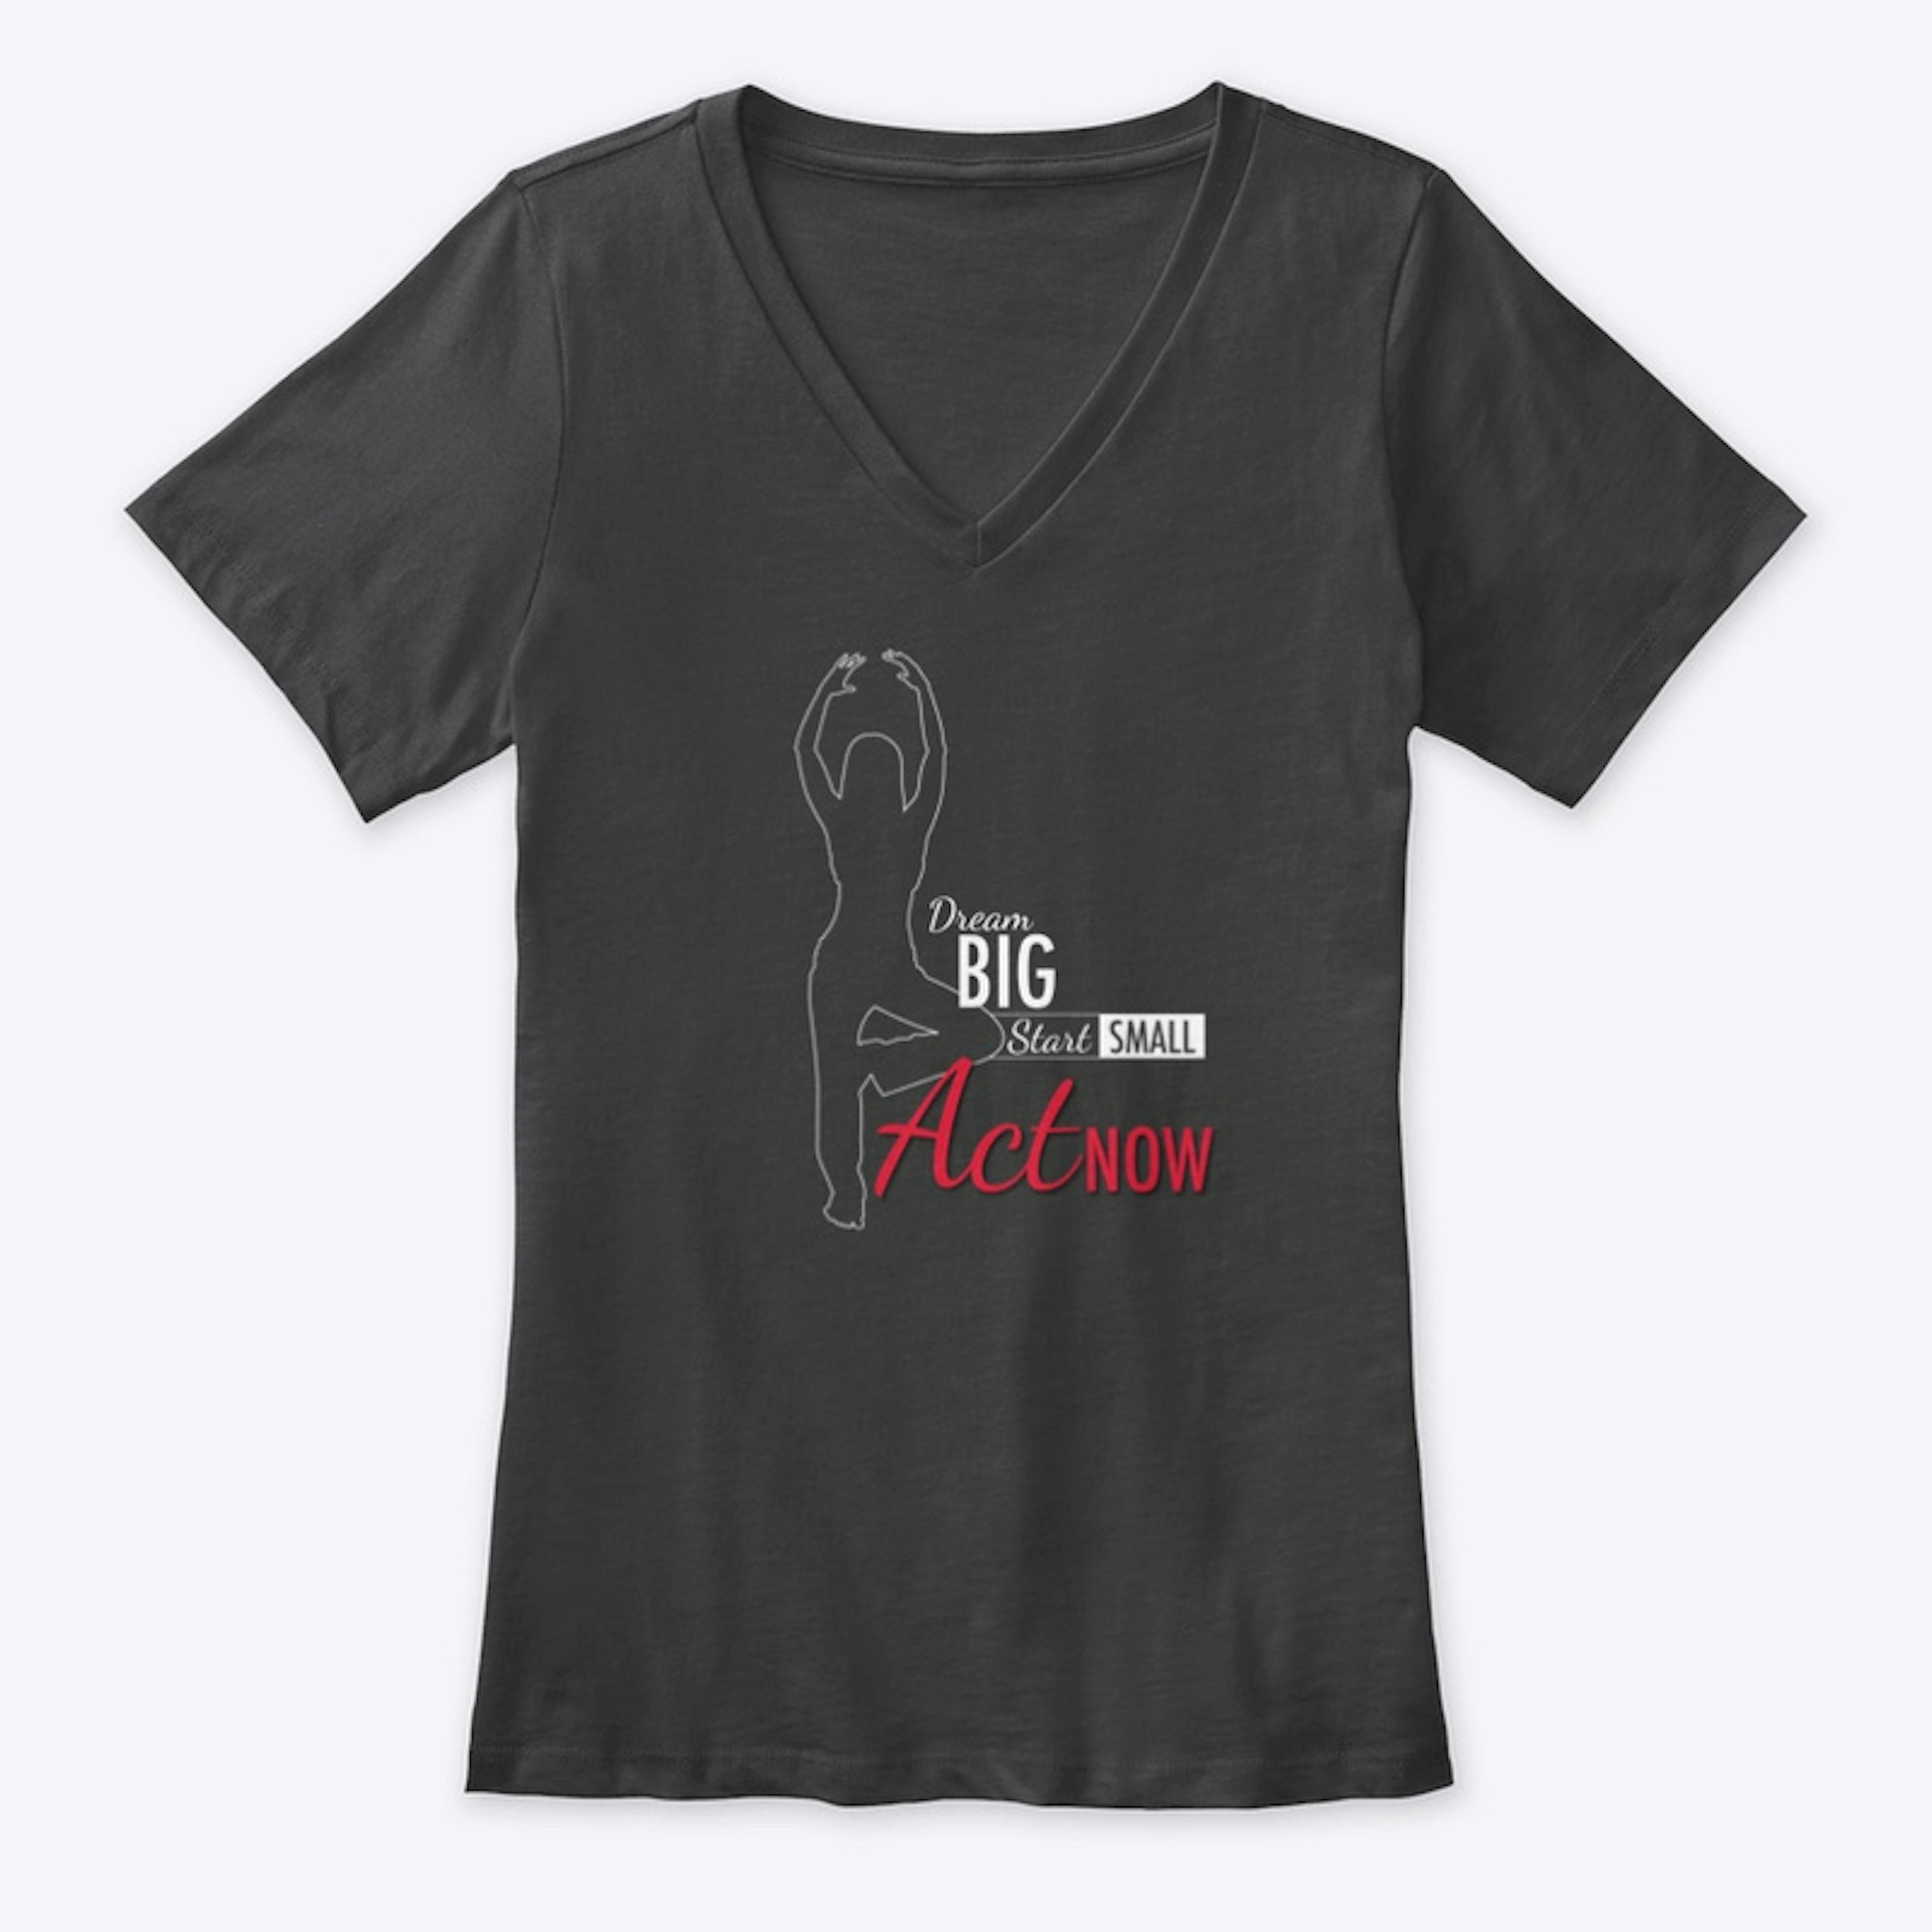 StepFlix dream big dark t-shirt